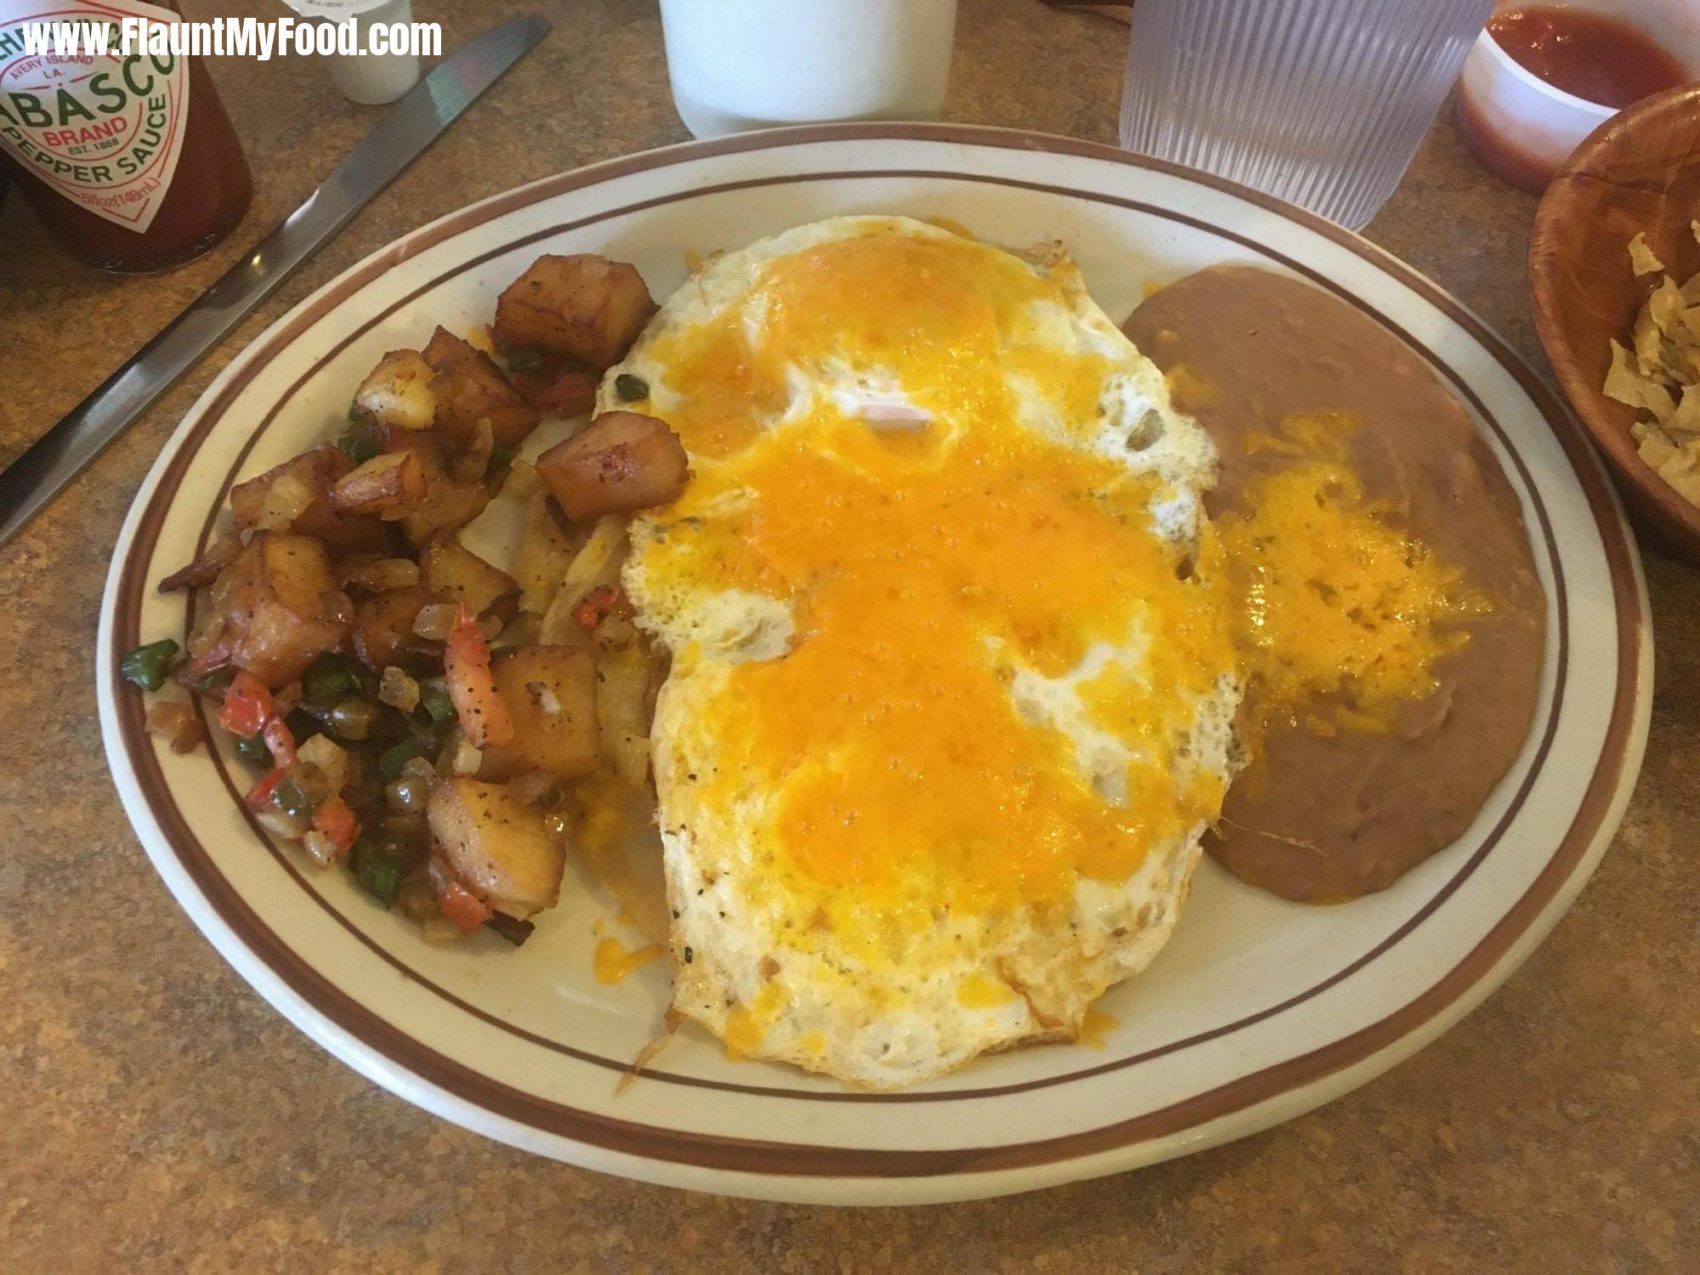 New Mexico Breakfast!New Mexico Breakfast! Eggs, beans, potatoes and veggies!